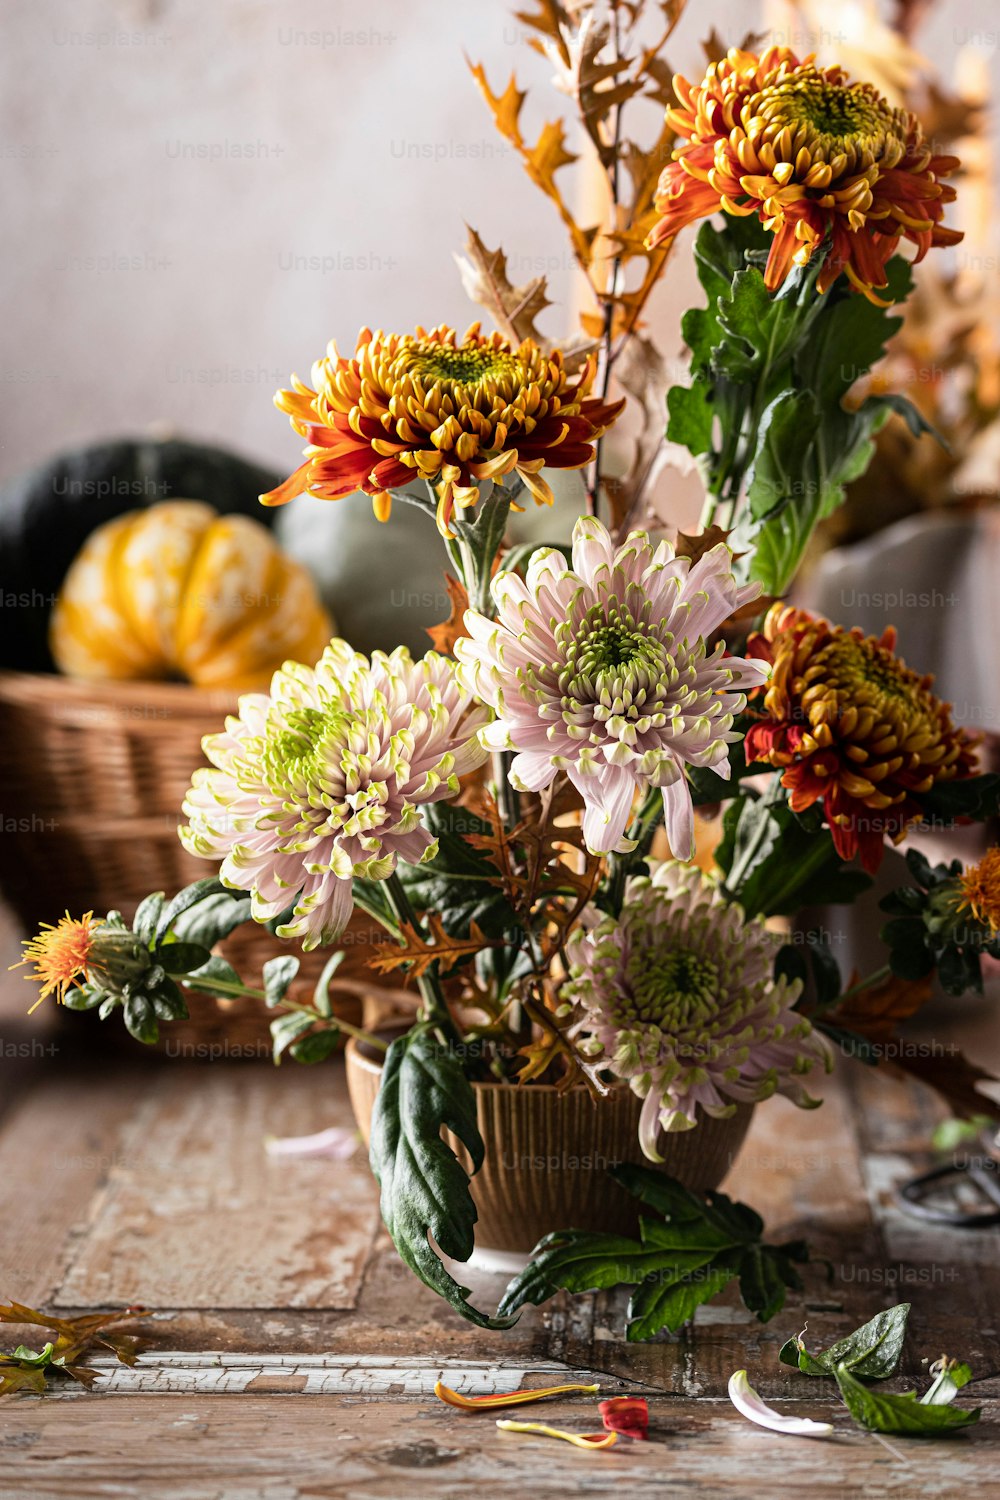 Un vase rempli de beaucoup de fleurs sur une table en bois